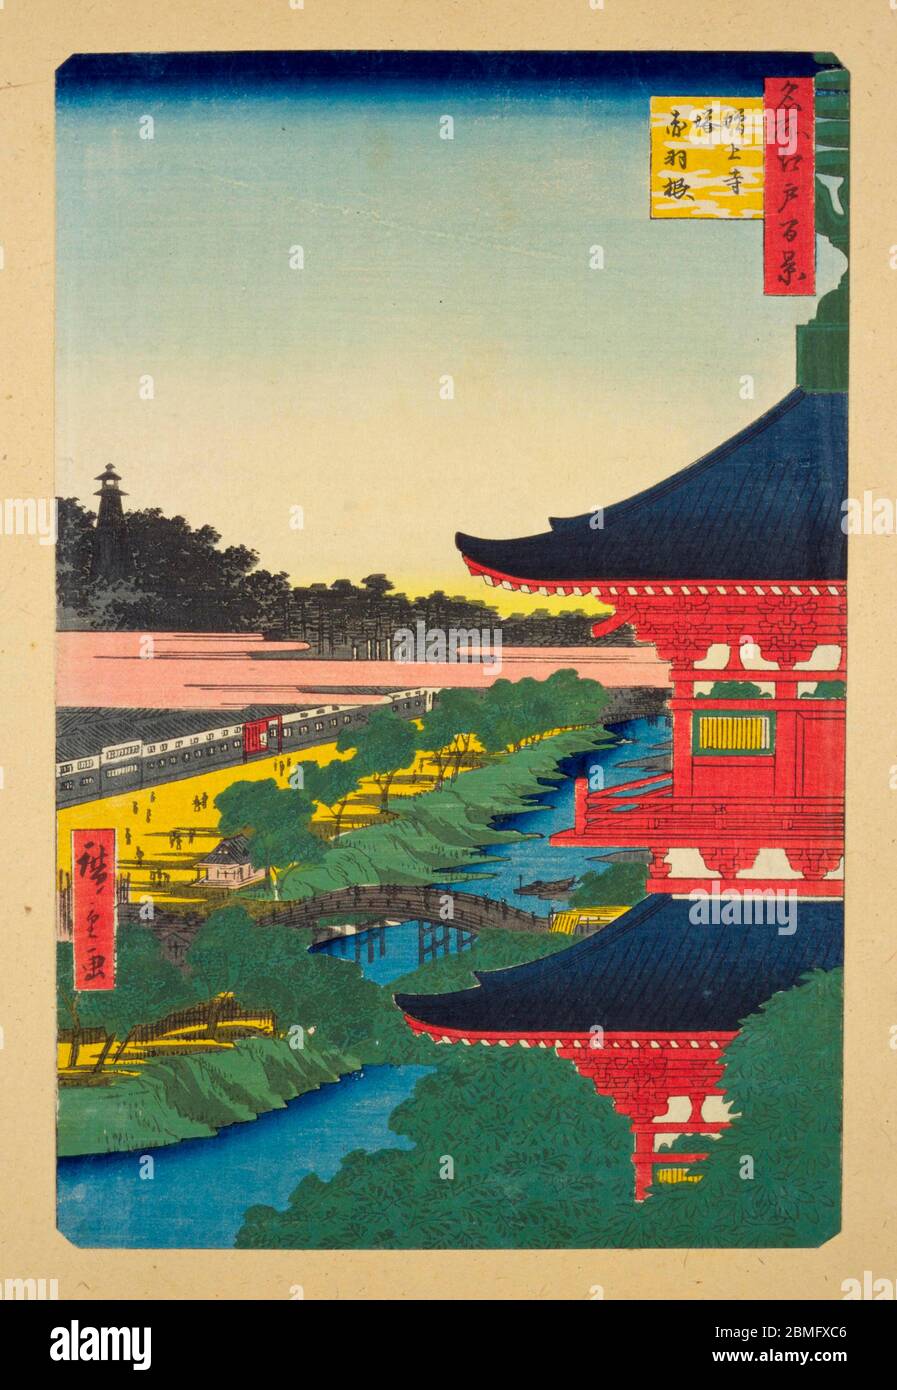 [ 1850er Japan - Zojoji Pagode in Shiba ] - die Pagode des Zojoji-Tempels in Shiba, Edo (aktuelle Tokyo), 1857 (Ansei 4). Dieser Holzschnitt ist Bild 53 in hundert berühmten Ansichten von Edo (名所江戸百景, Meisho Edo Hyakkei), einer Serie von Ukiyoe Künstler Utagawa Hiroshige (歌川広重, 1797–1858) erstellt. Es ist eine von 30 Sommerszenen der Serie. Titel: Die Pagode des Zojoji-Tempels und Akabane (増上寺塔赤羽根, Zojojito Akabane) Vintage-Ukiyoe-Holzschnitt aus dem 19. Jahrhundert. Stockfoto